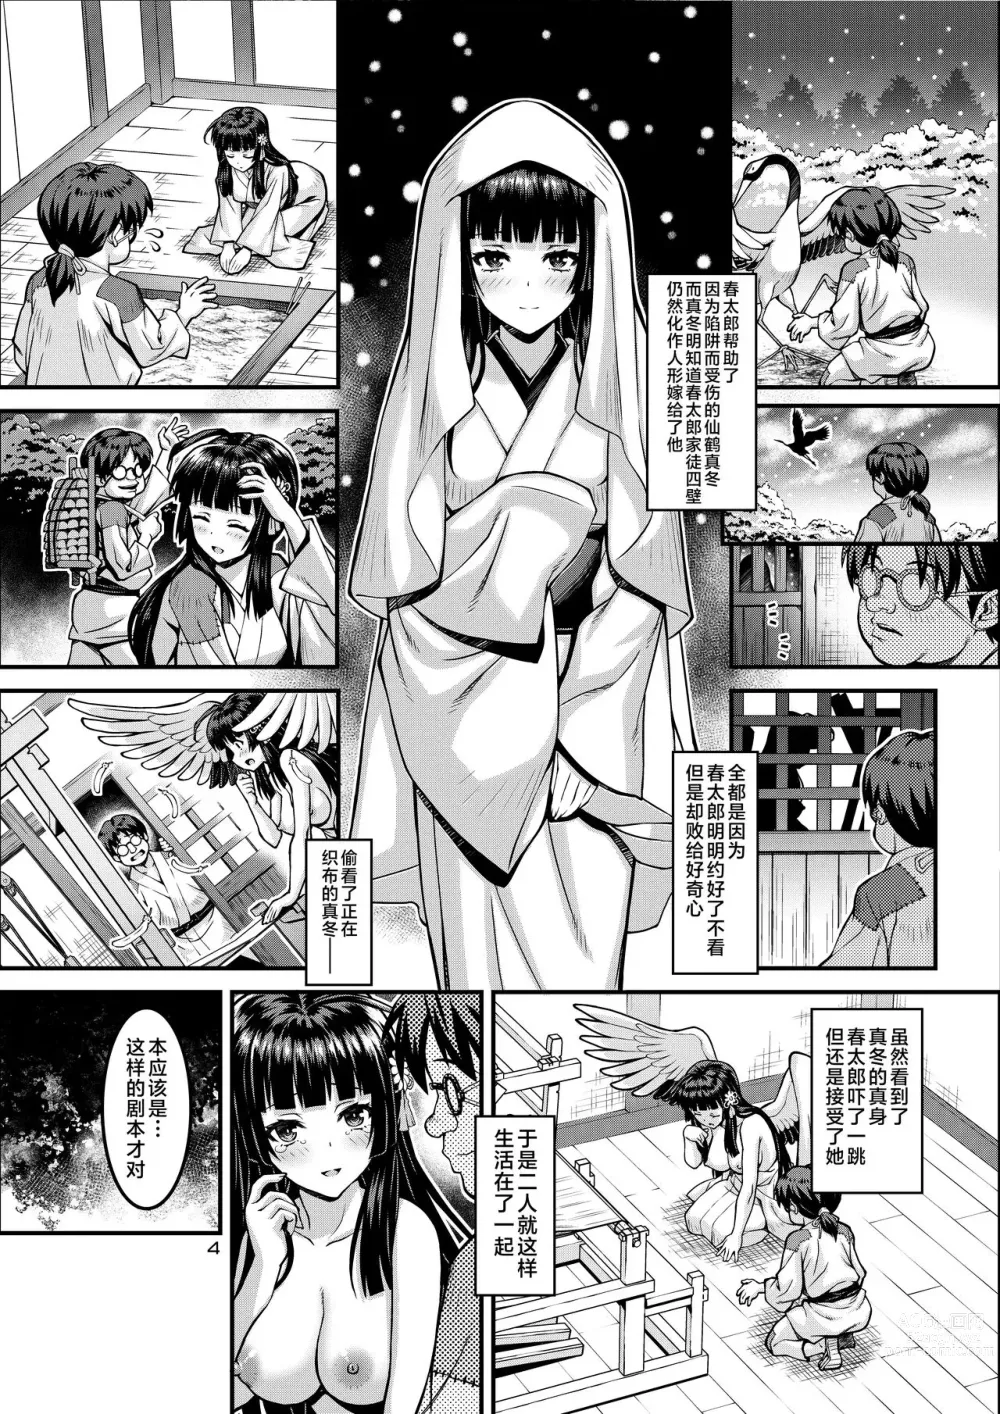 Page 4 of doujinshi Niku Miko no Utage Gaiden ~Tsuru no Ongaeshi~